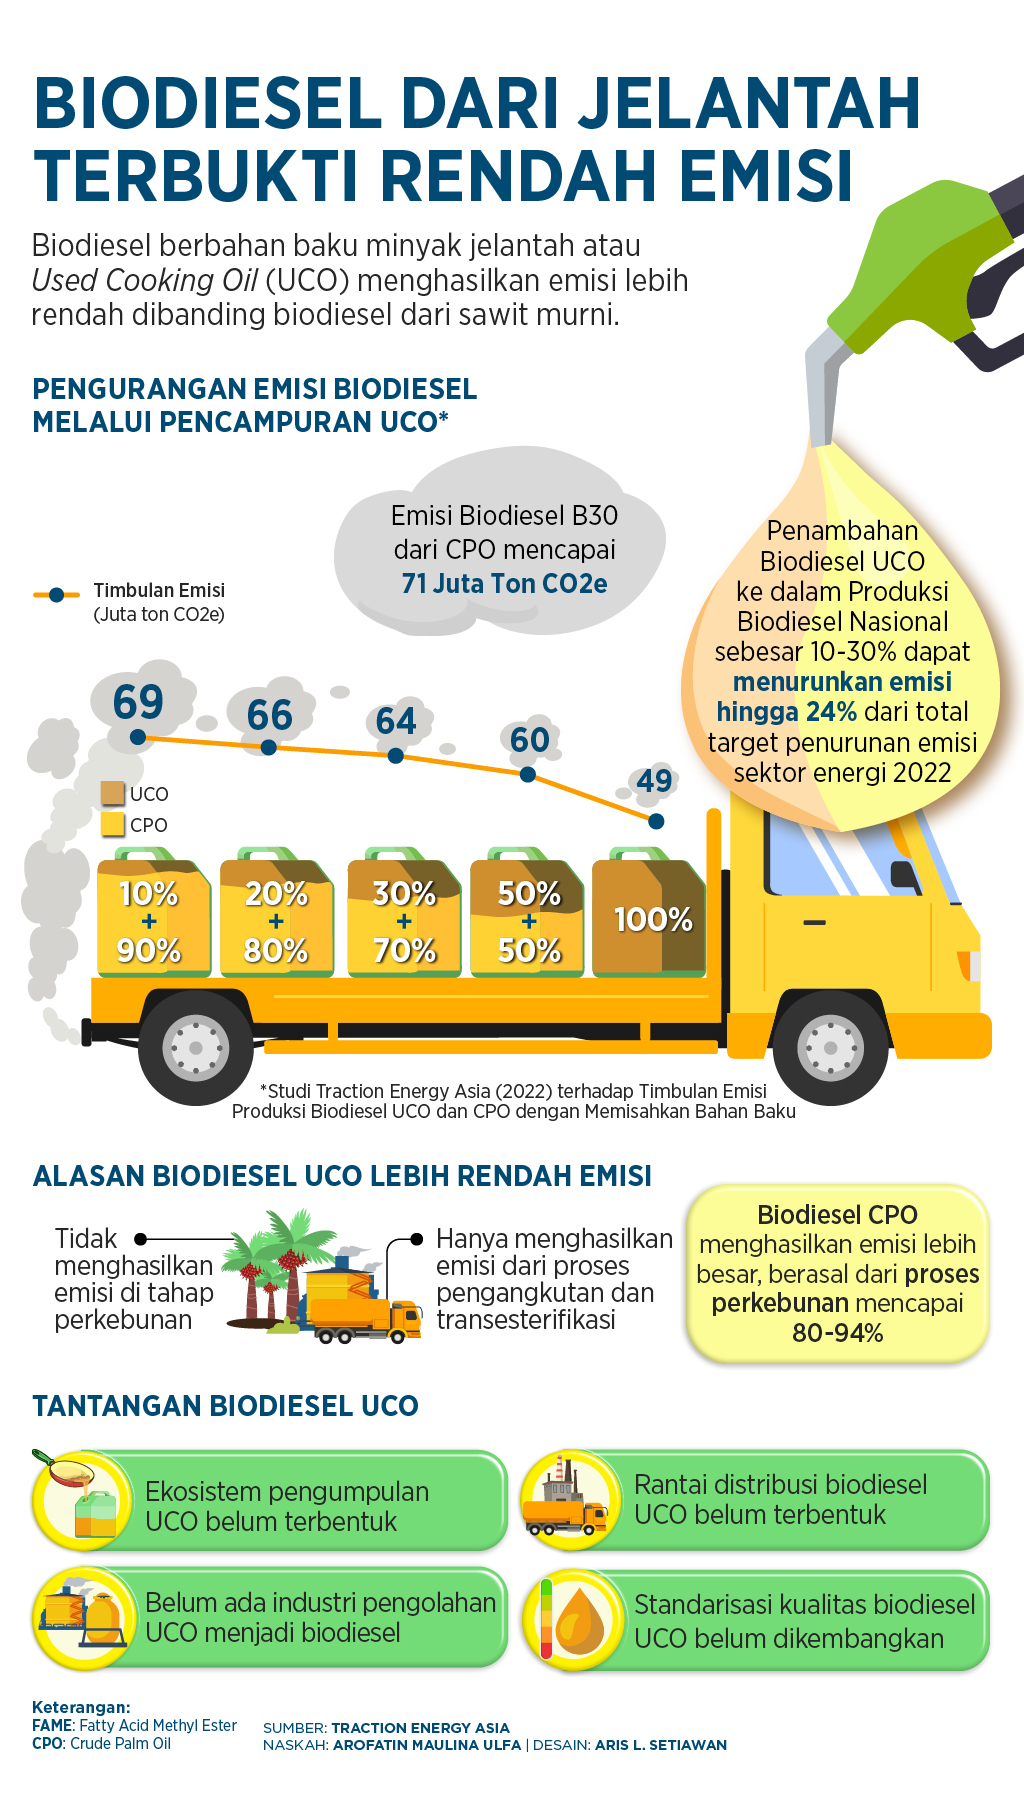 Biodiesel Dari Jelantah Terbukti Rendah Emisi